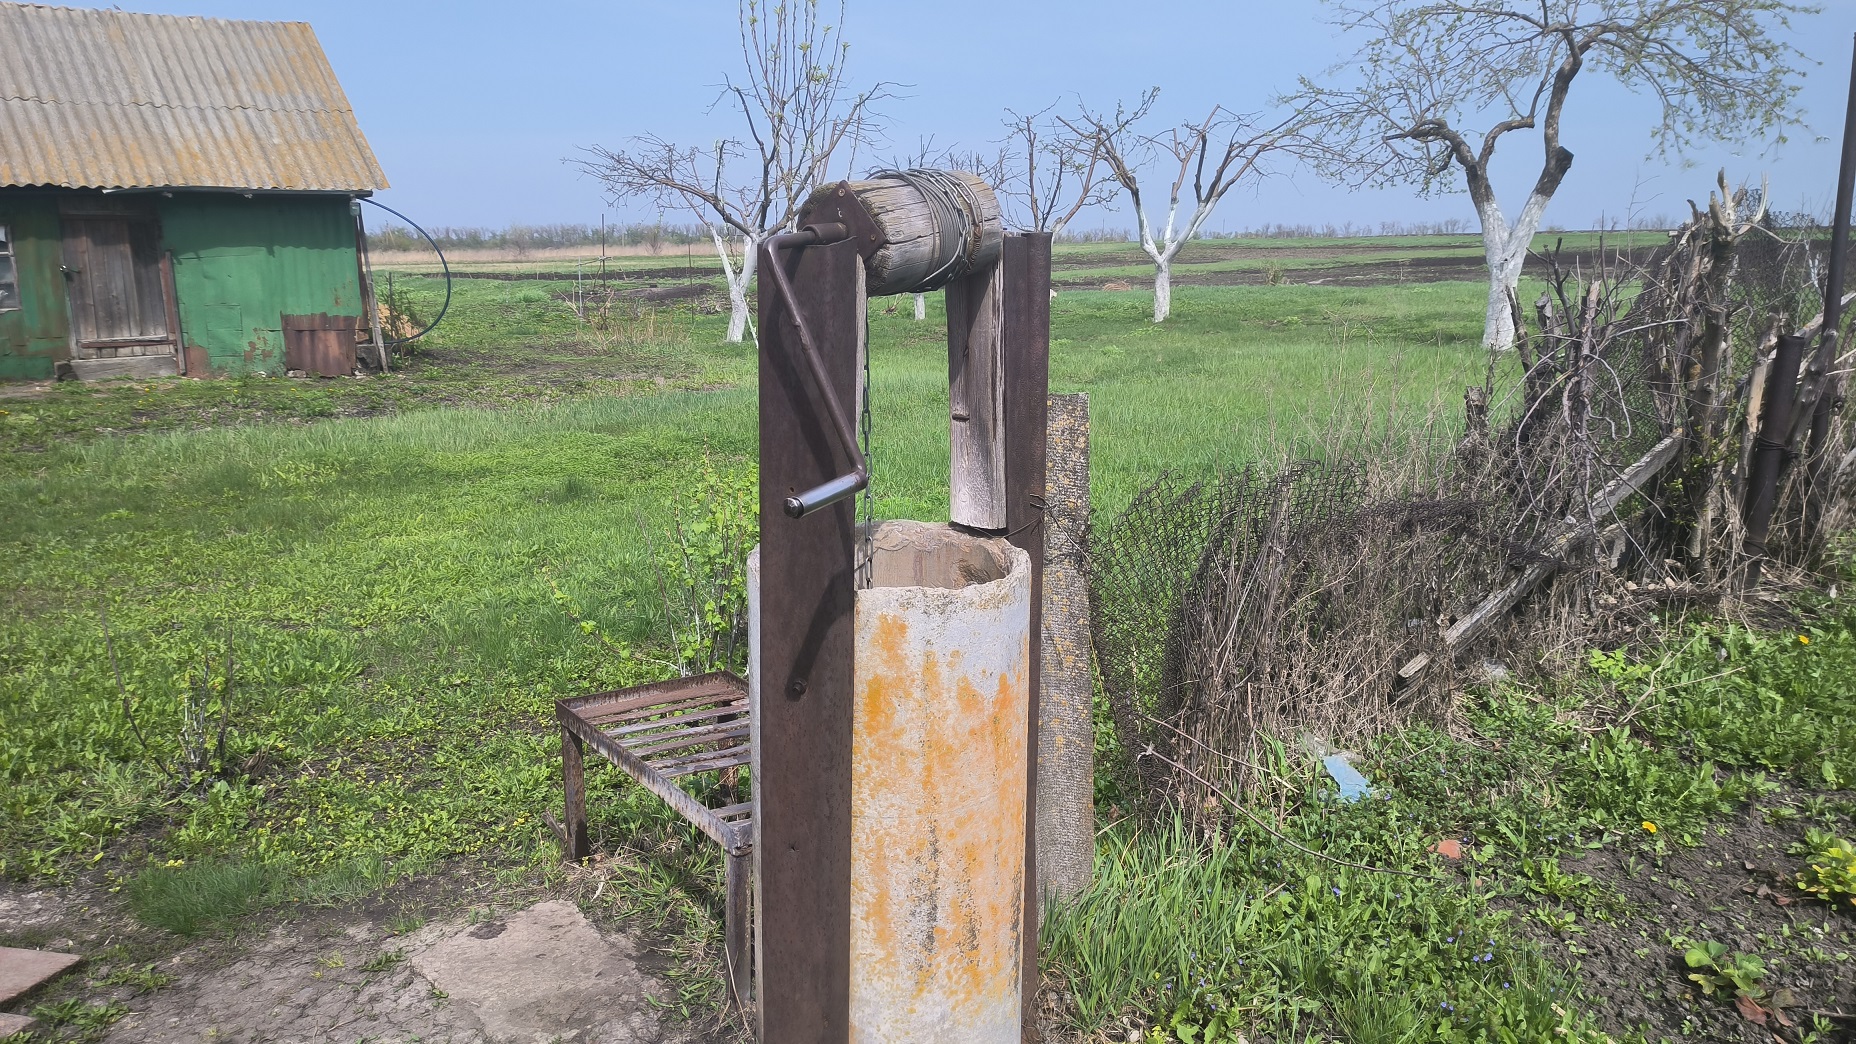 Поселок в Воронежской области 10 лет мучается без водопровода